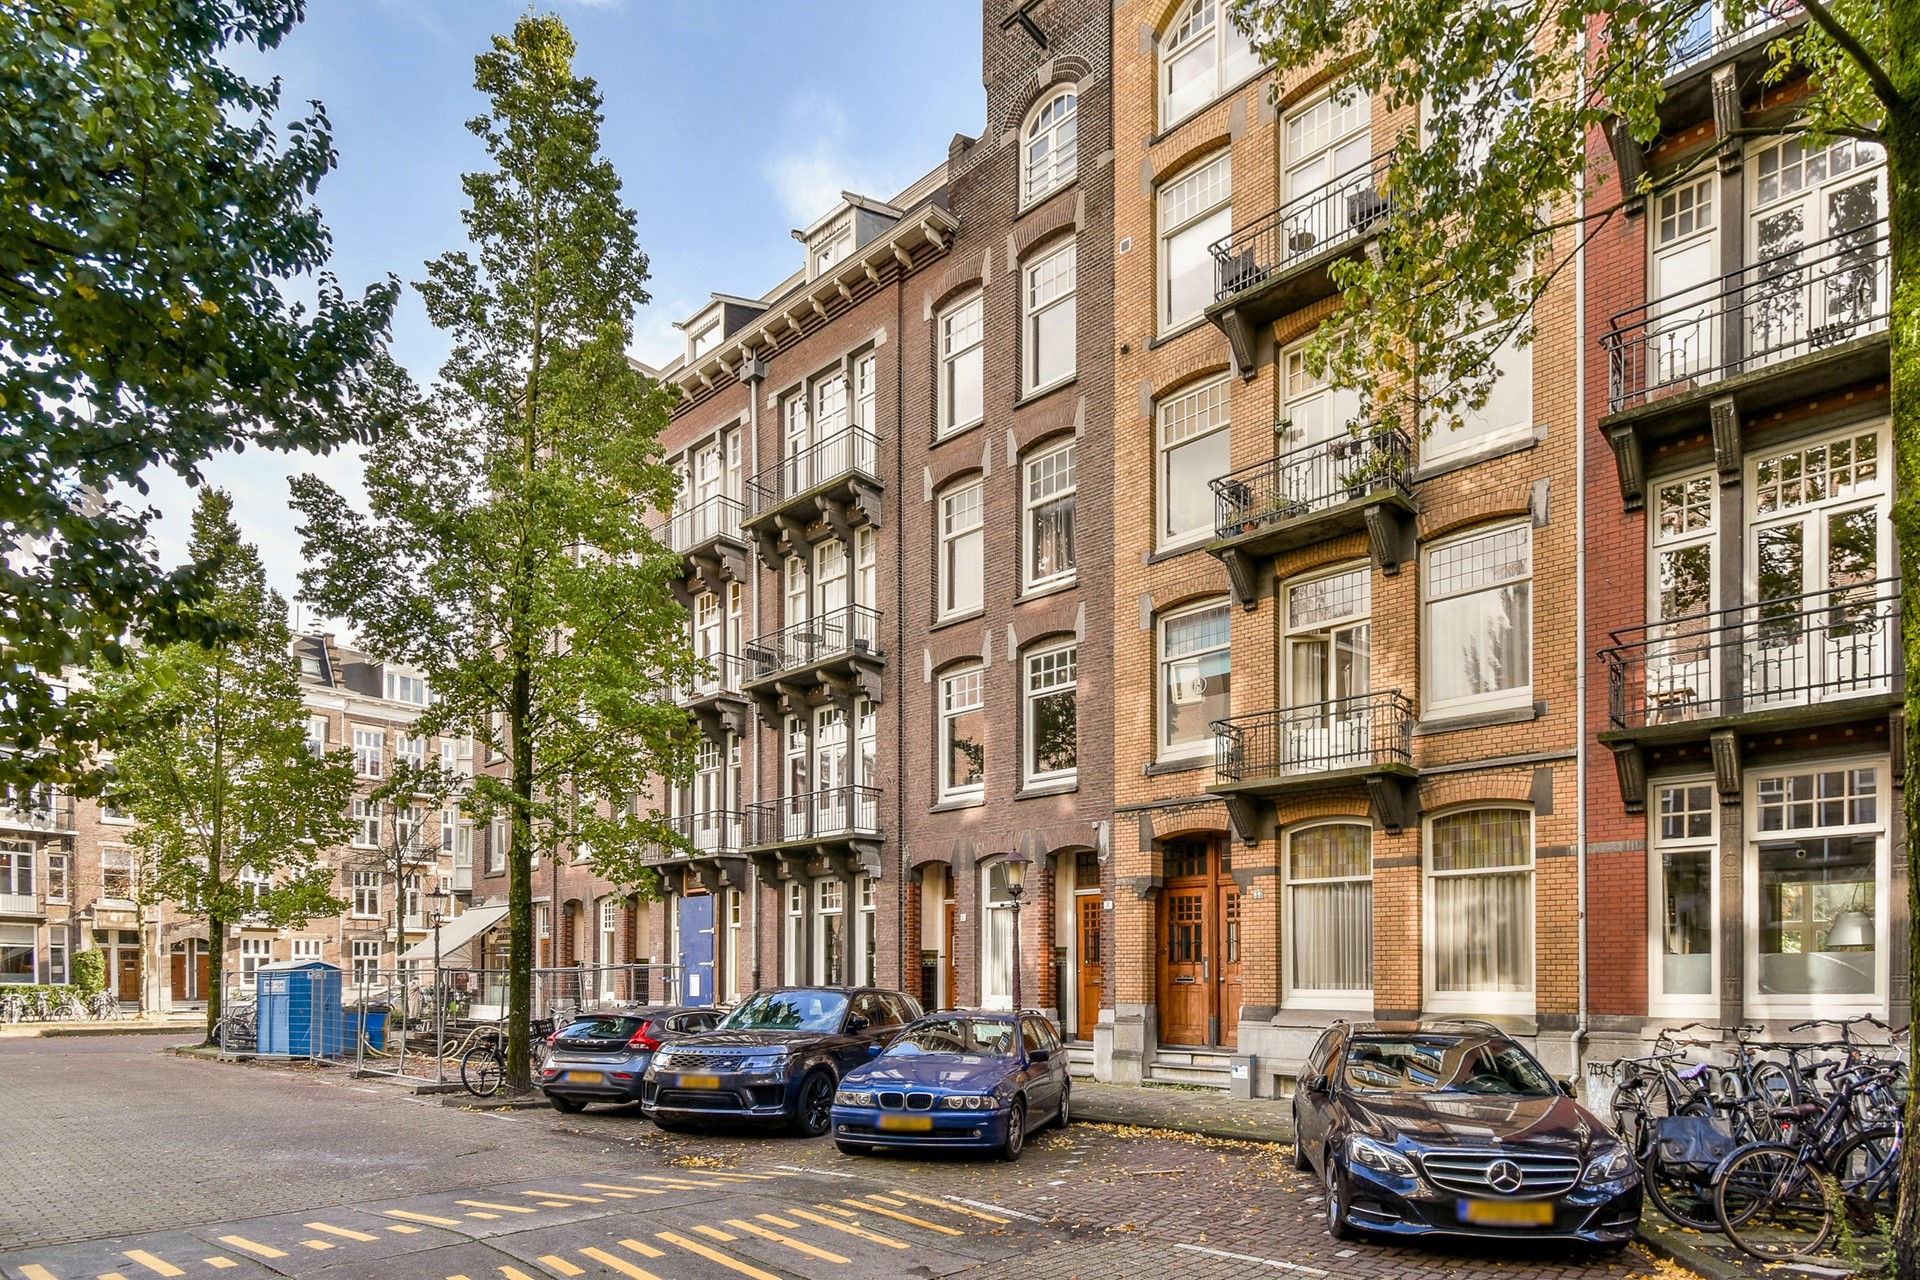 Bekijk foto 1/29 van apartment in Amsterdam